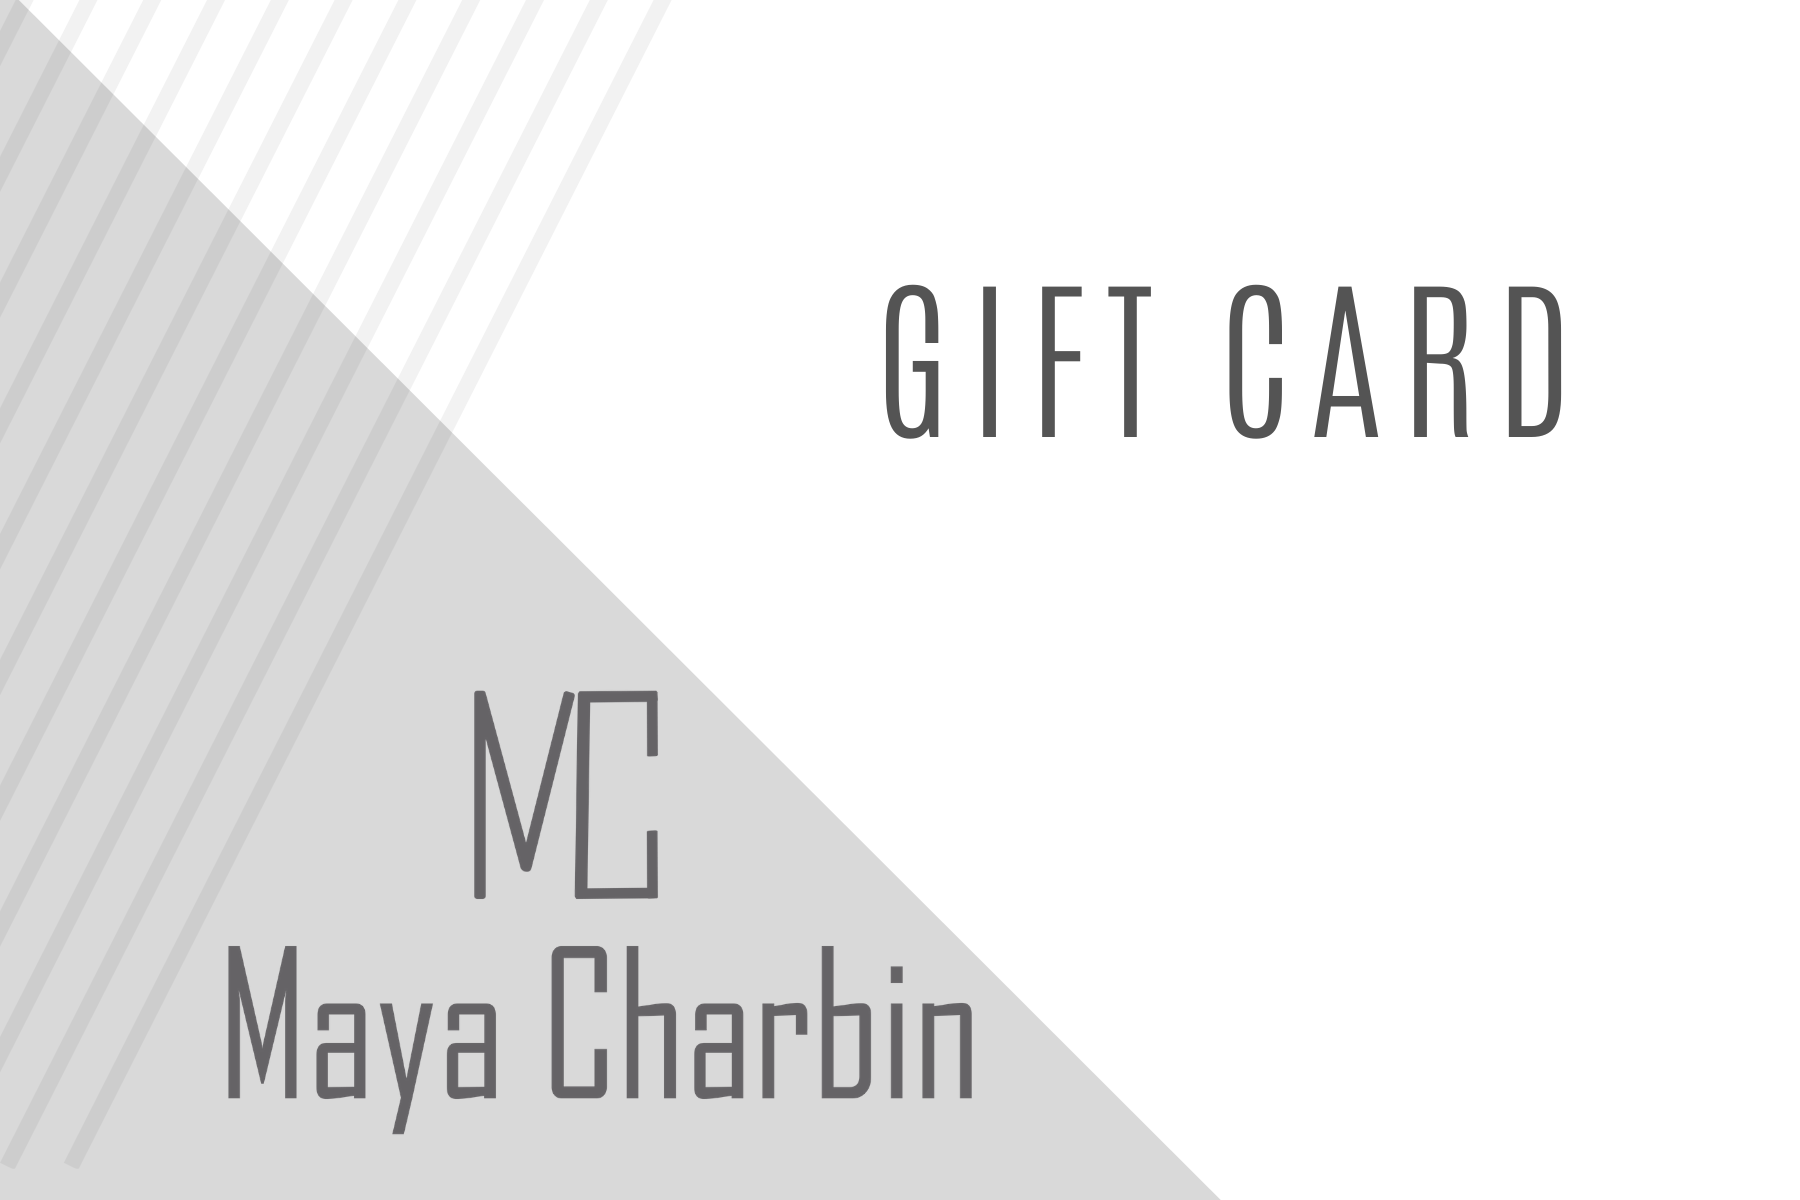 Maya Charbin Gift Card